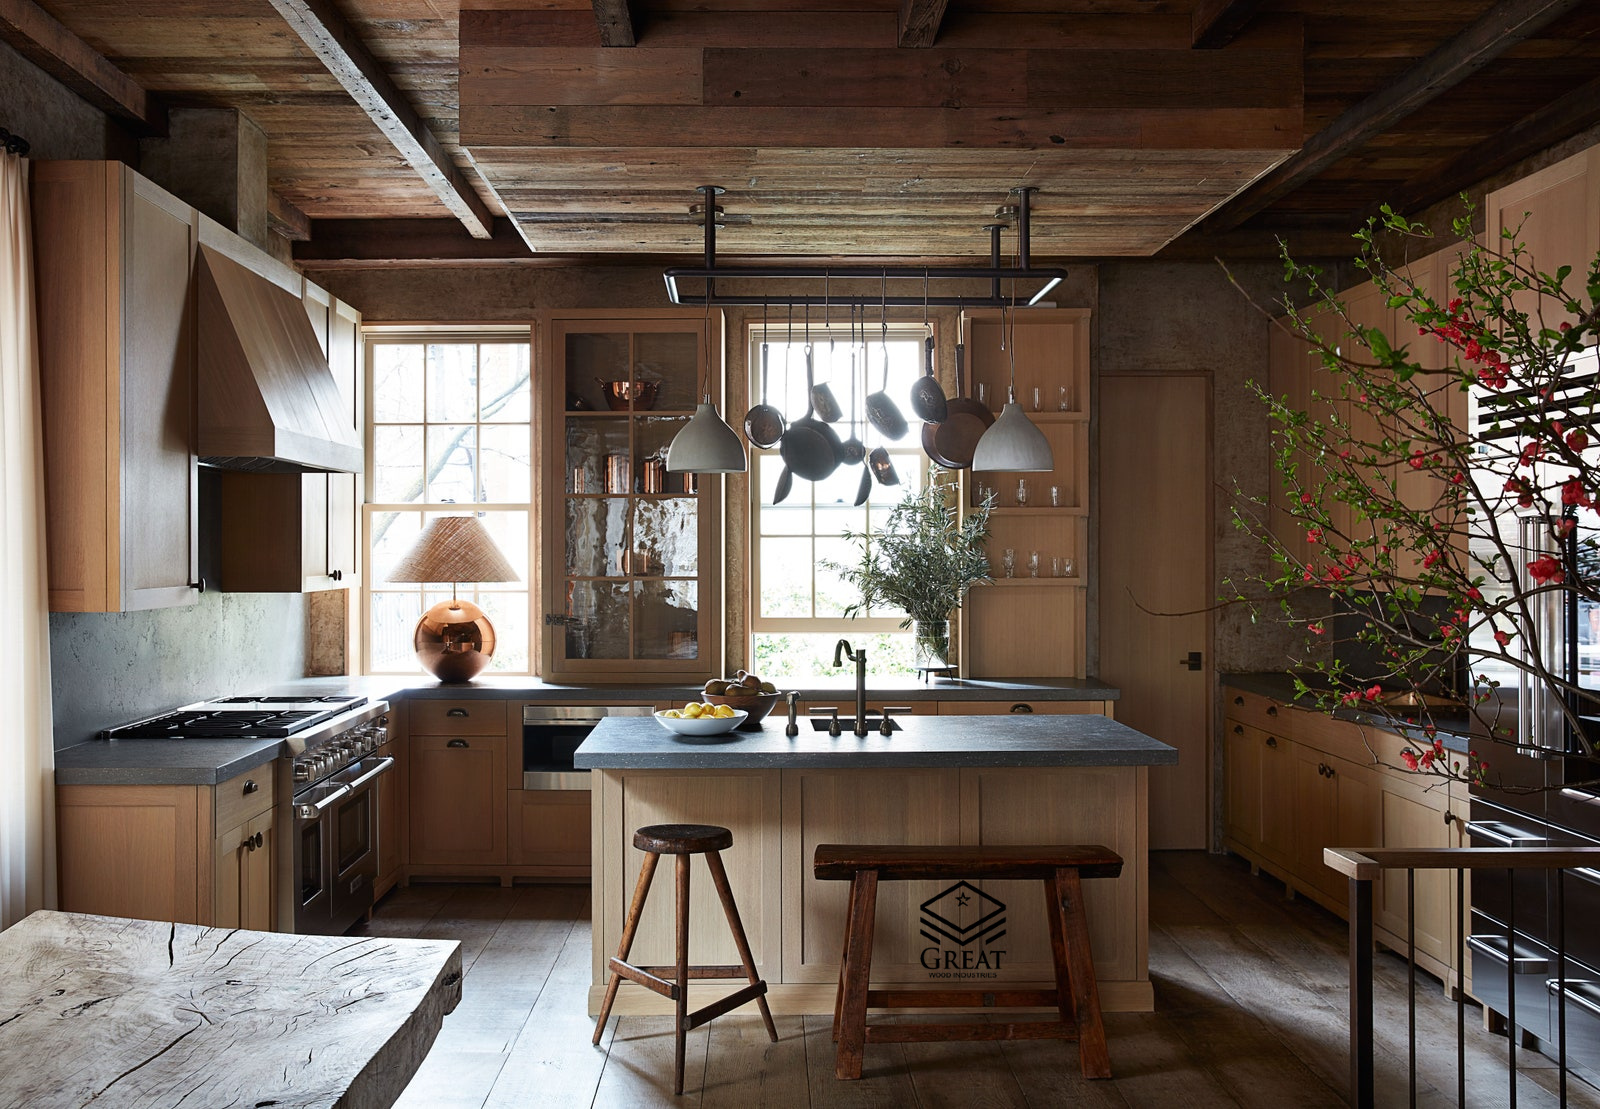 کابینت چوب طبیعی مدرن در بازسازی آشپزخانه